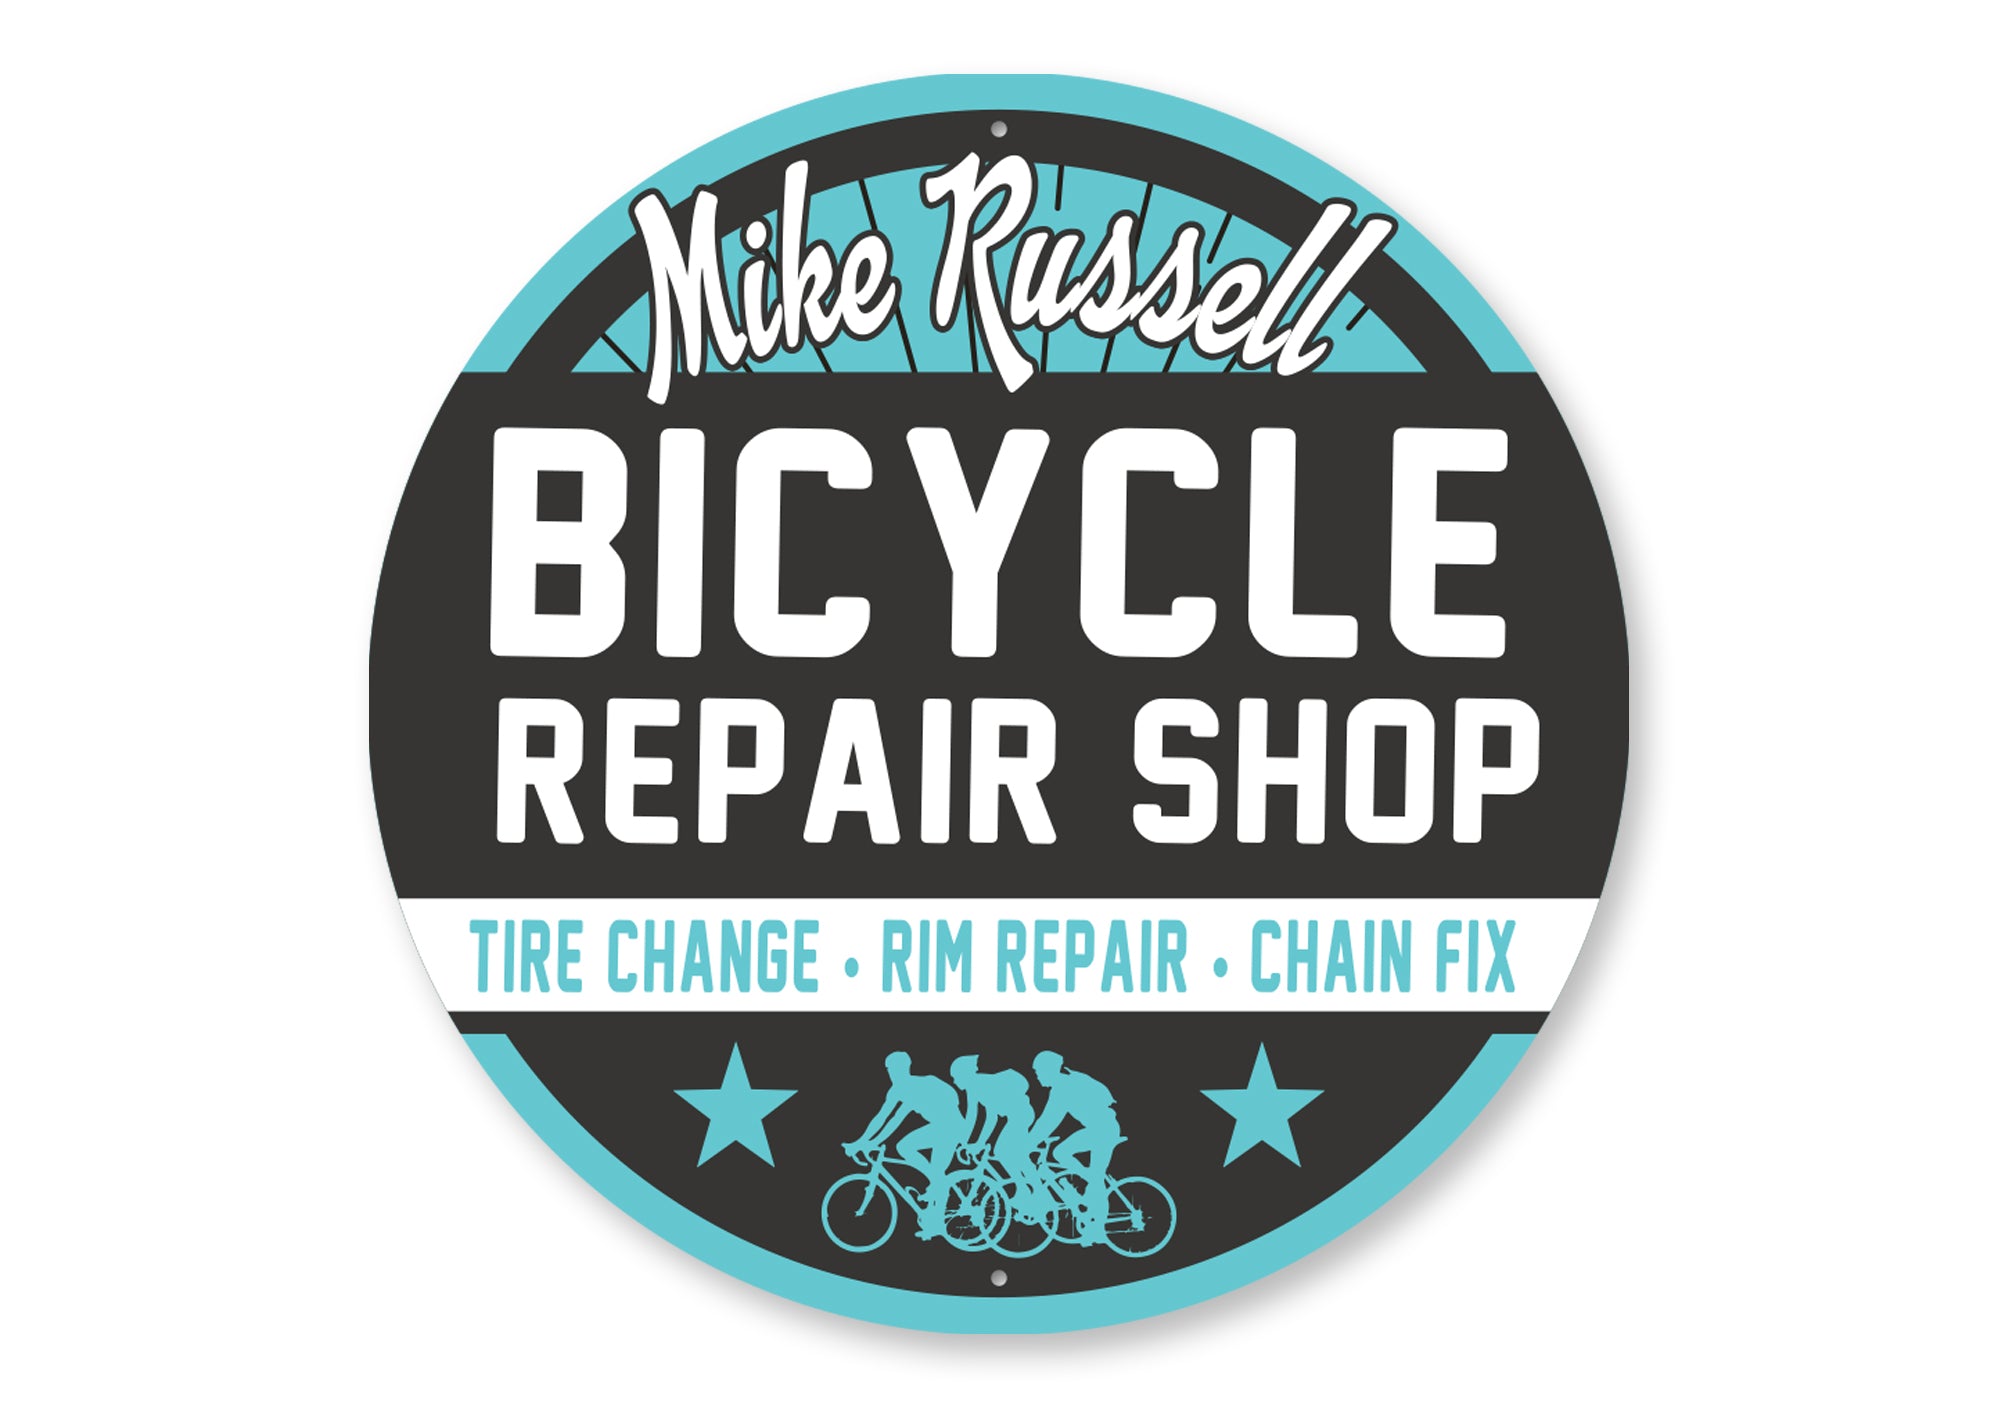 Custom Bike Repair Shop Sign